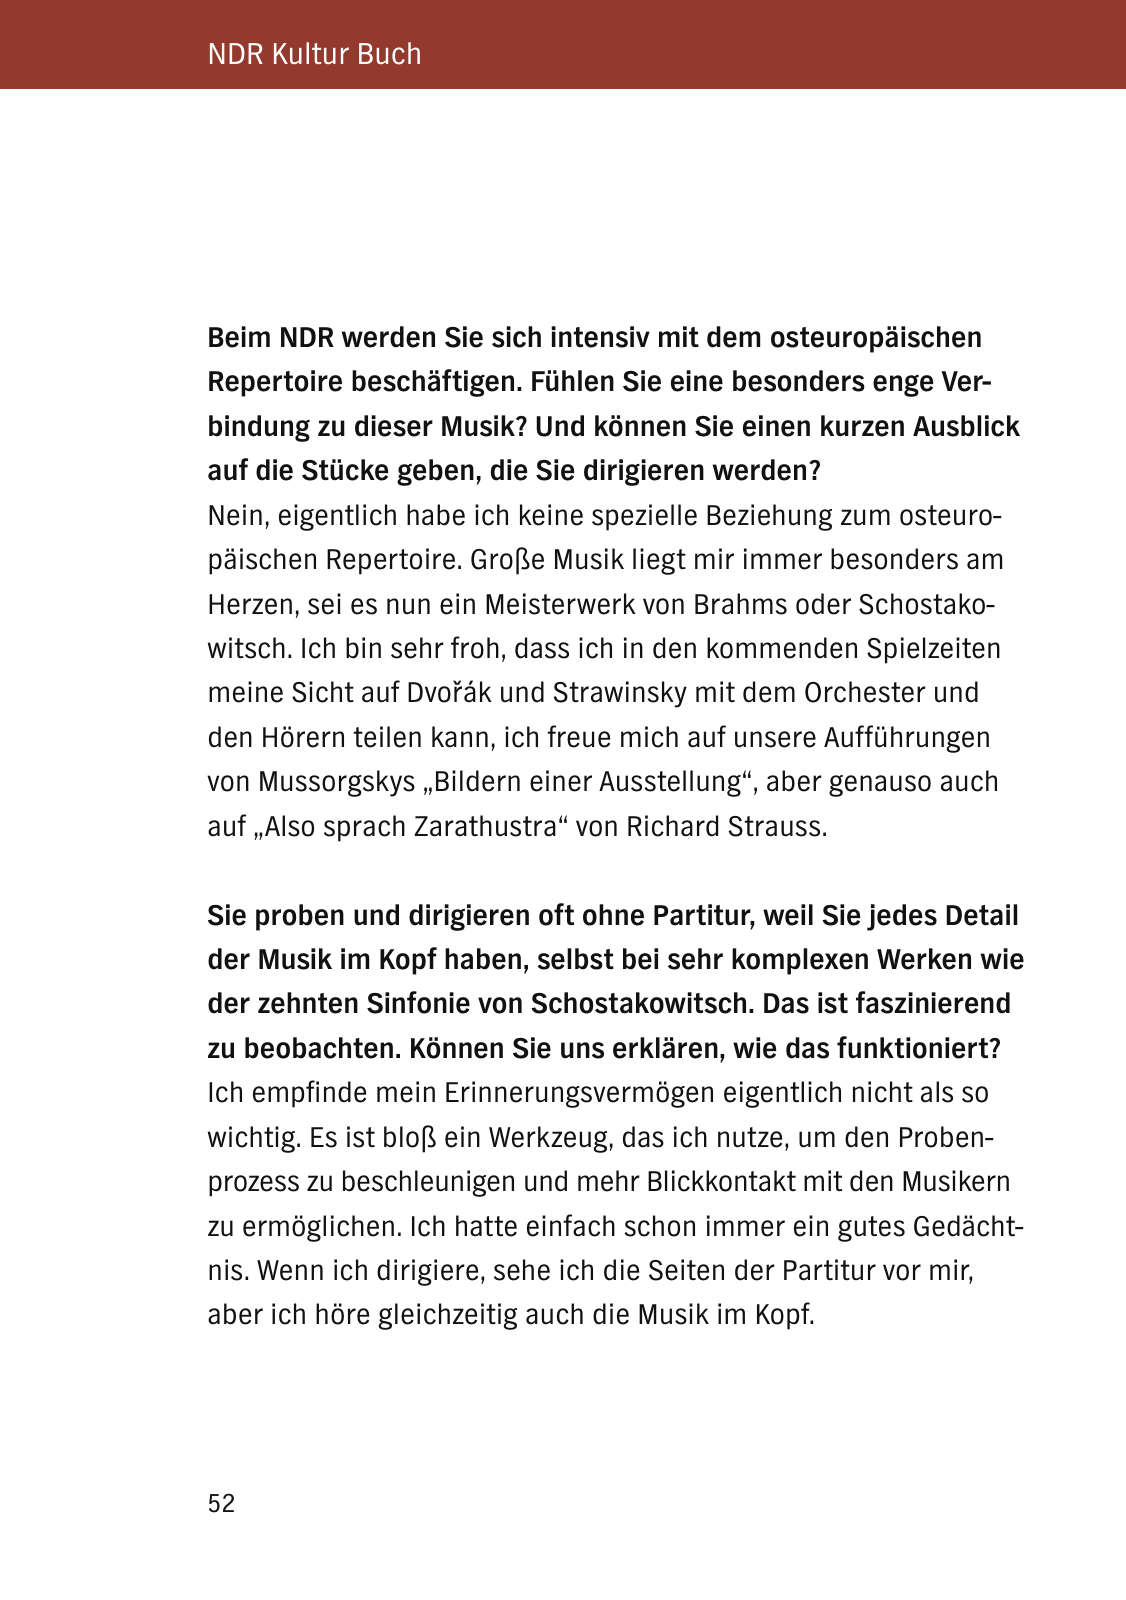 Vorschau NDR Kultur Buch 2016_aktualisiert Seite 54